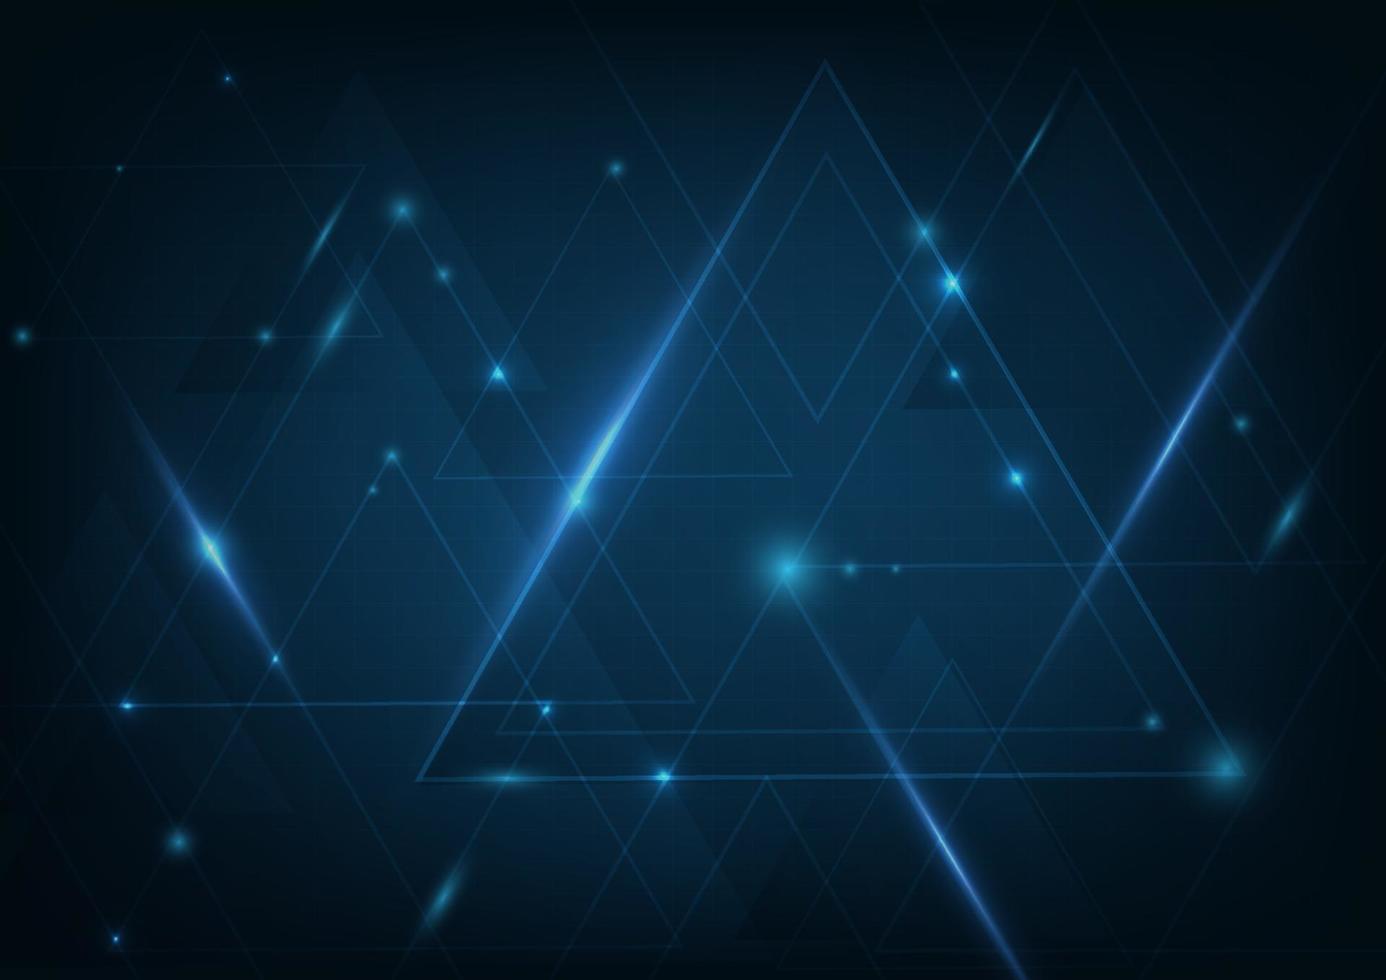 tecnologia abstrata triângulos azuis escuros forma e linhas de fundo com iluminação. vetor